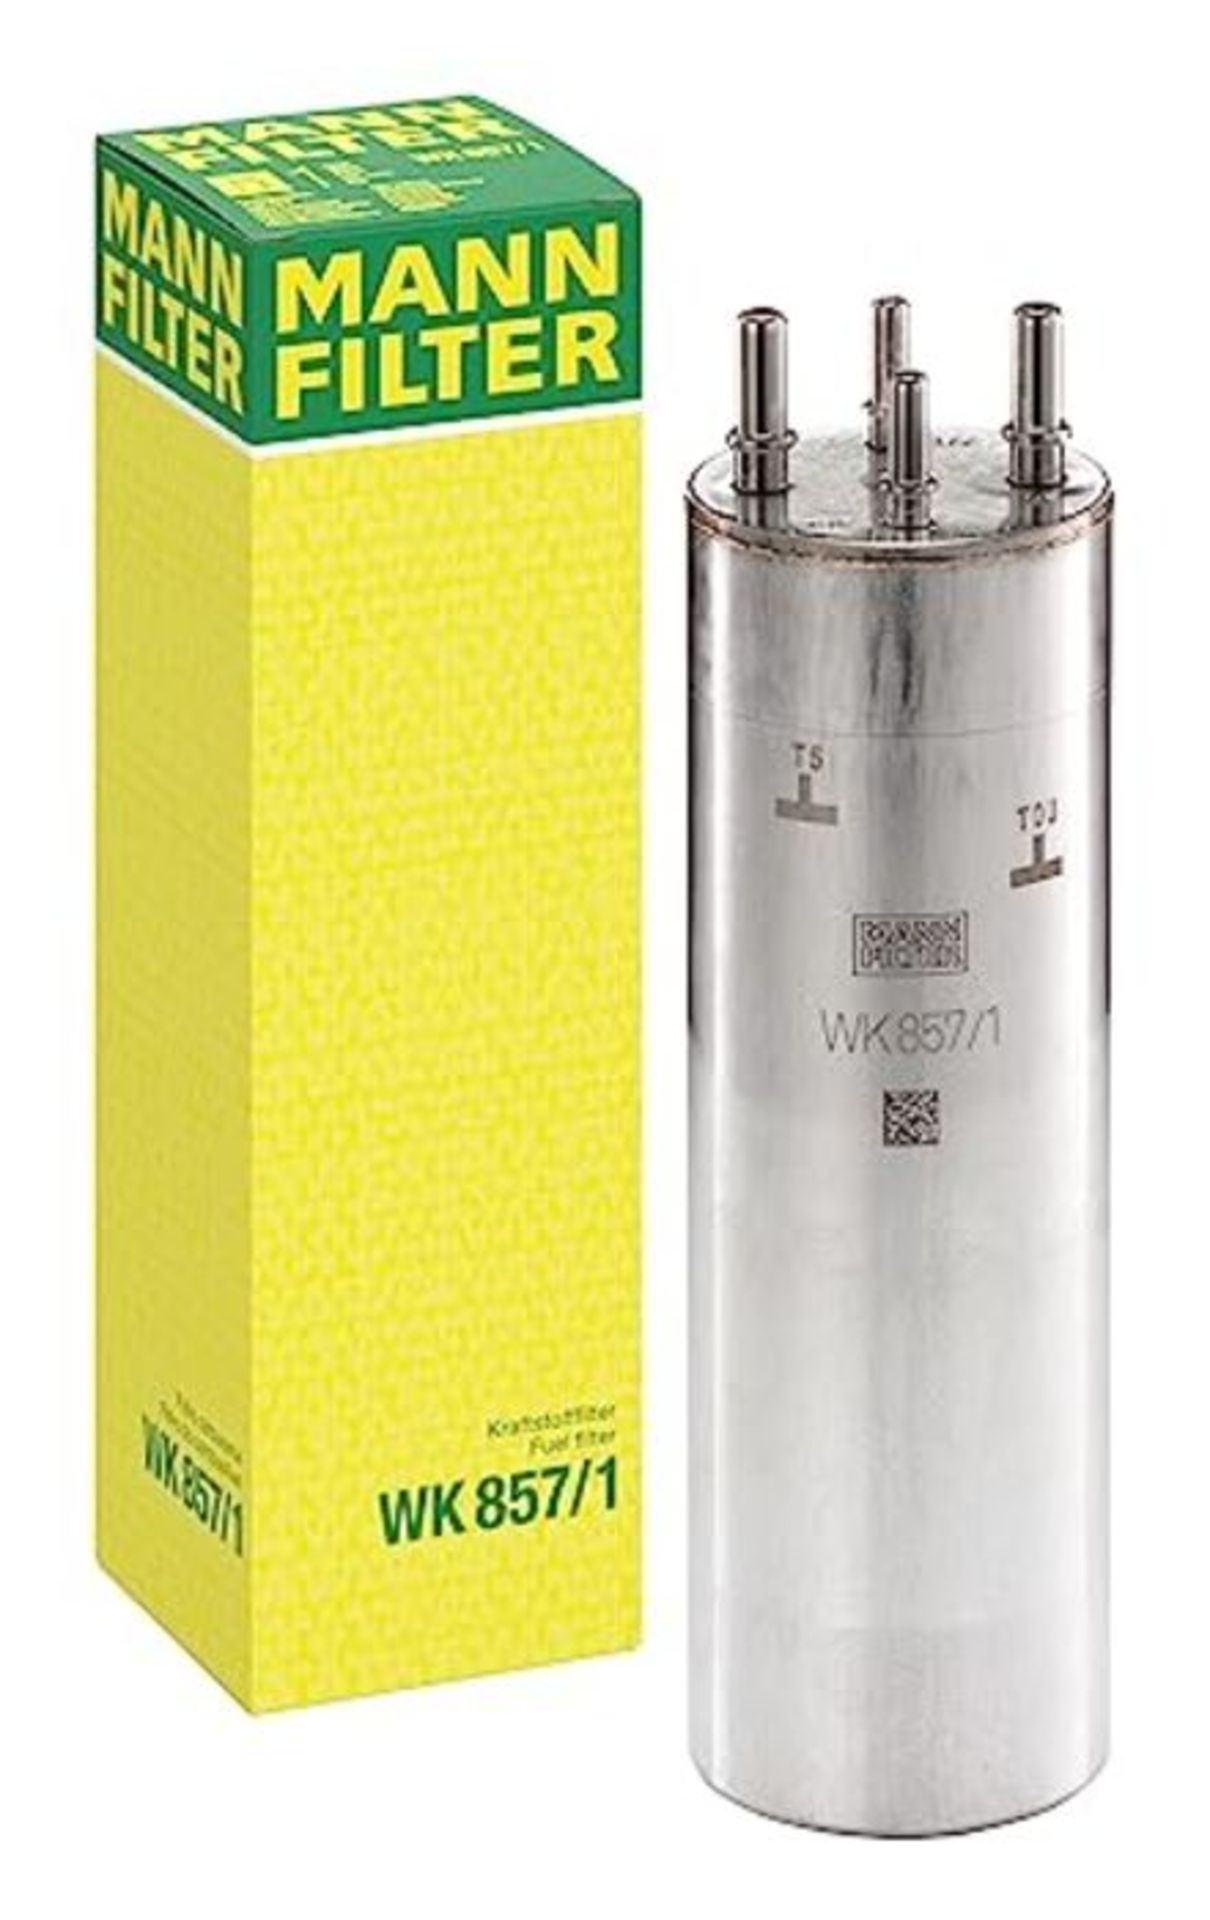 Original MANN-FILTER Fuel Filter WK 857/1 â¬  For Passenger Cars